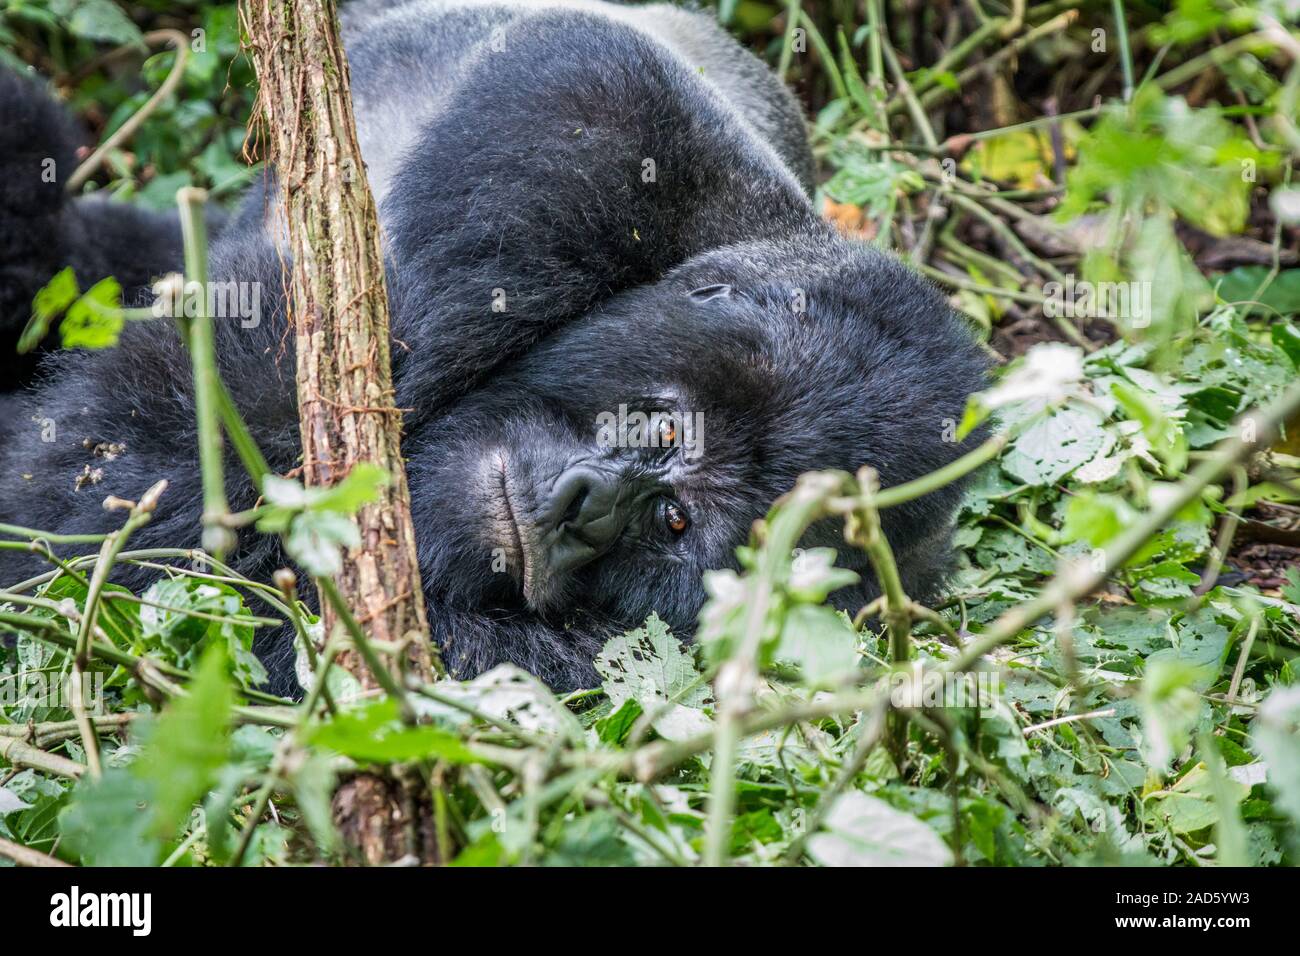 Silverback Mountain gorilla laying down. Stock Photo